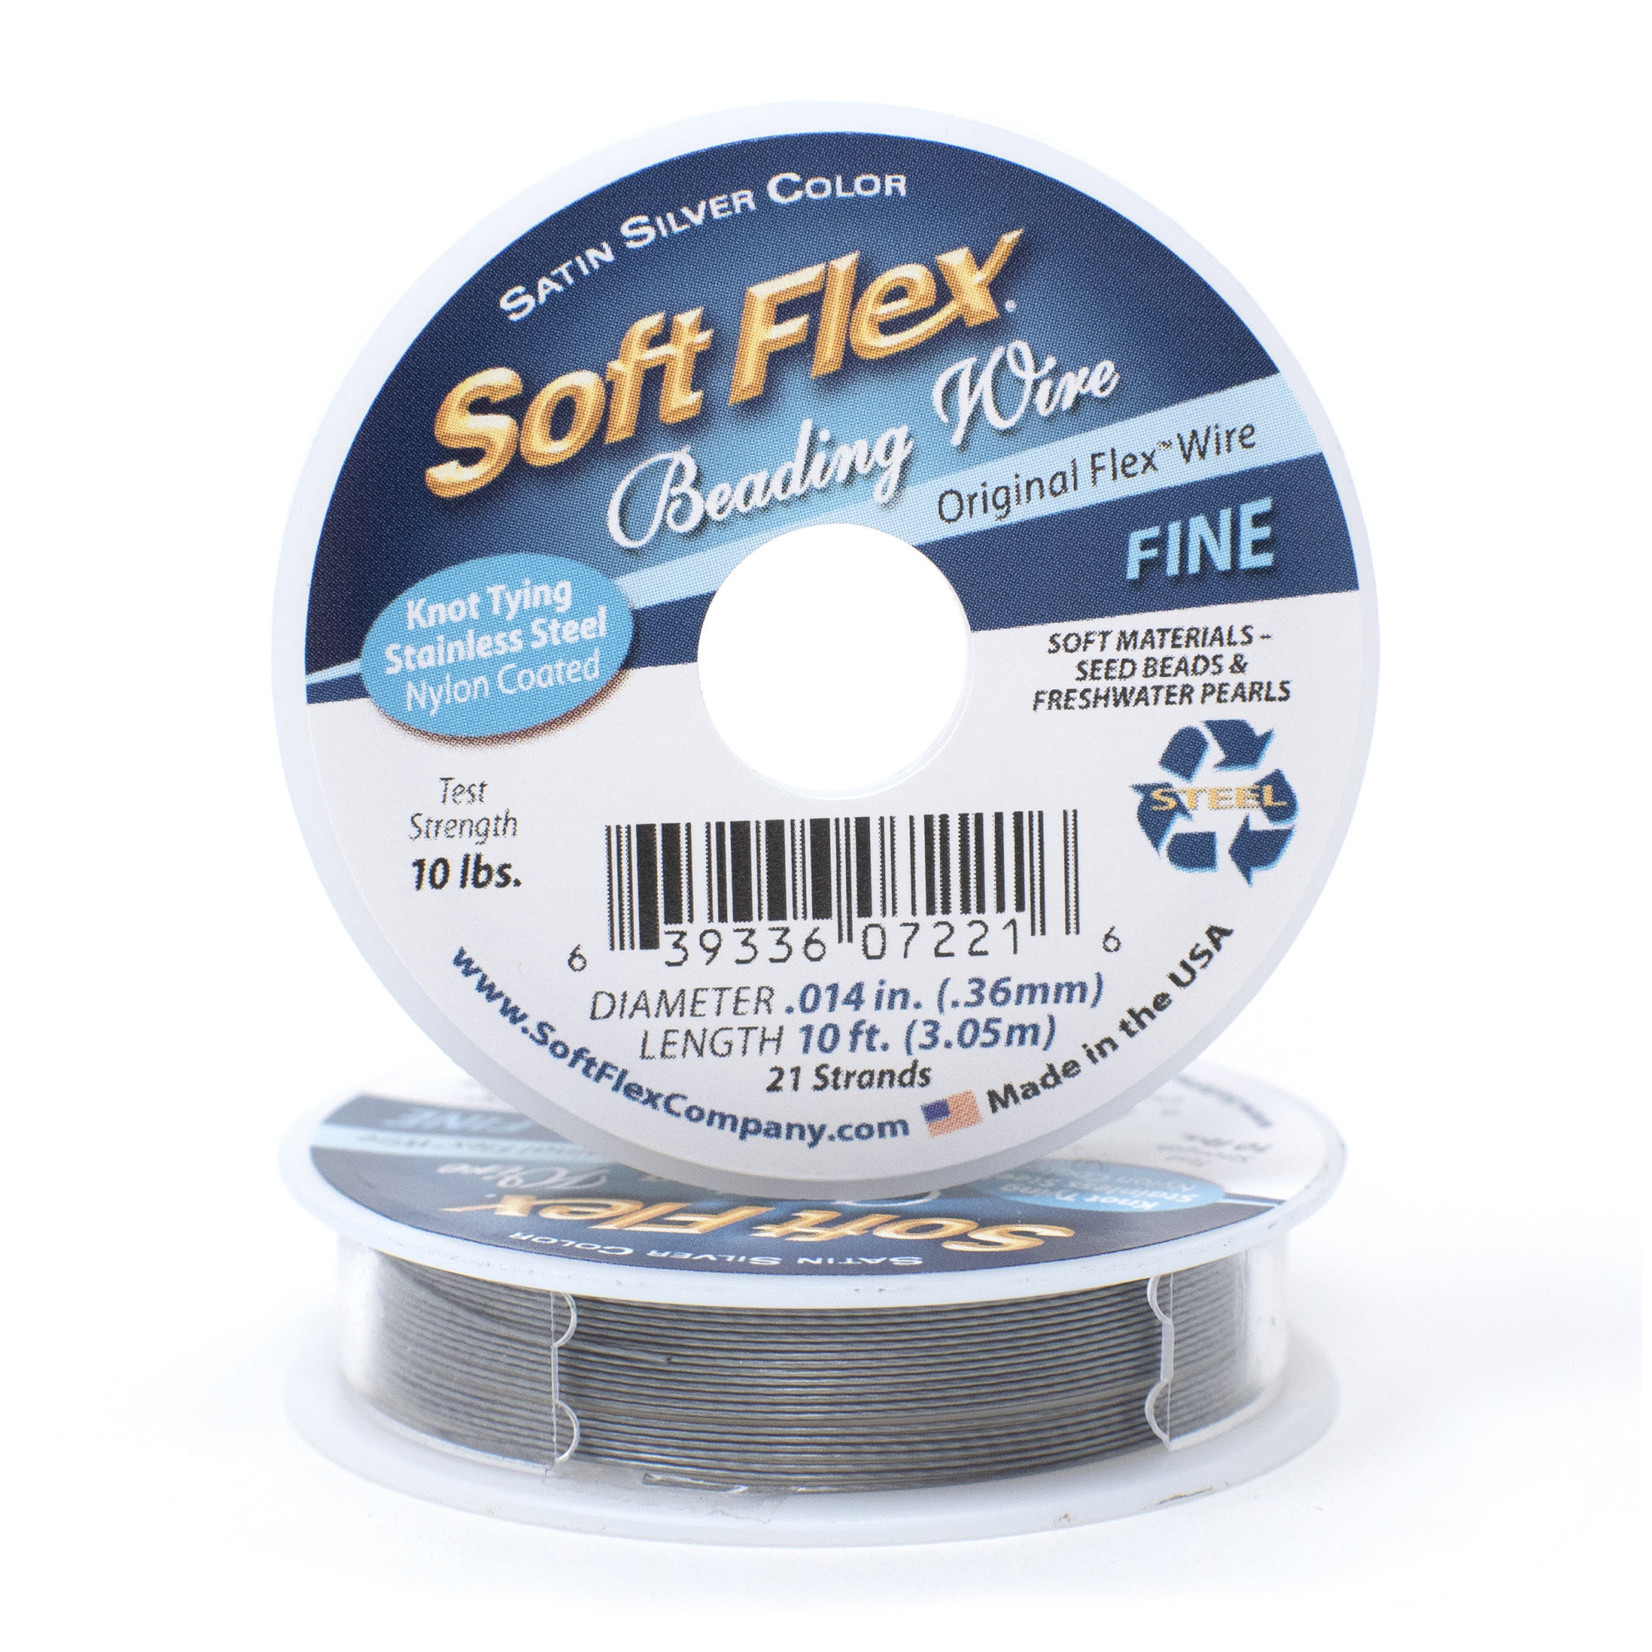 Softflex Softflex Fine Gray Beading Wire - 10'